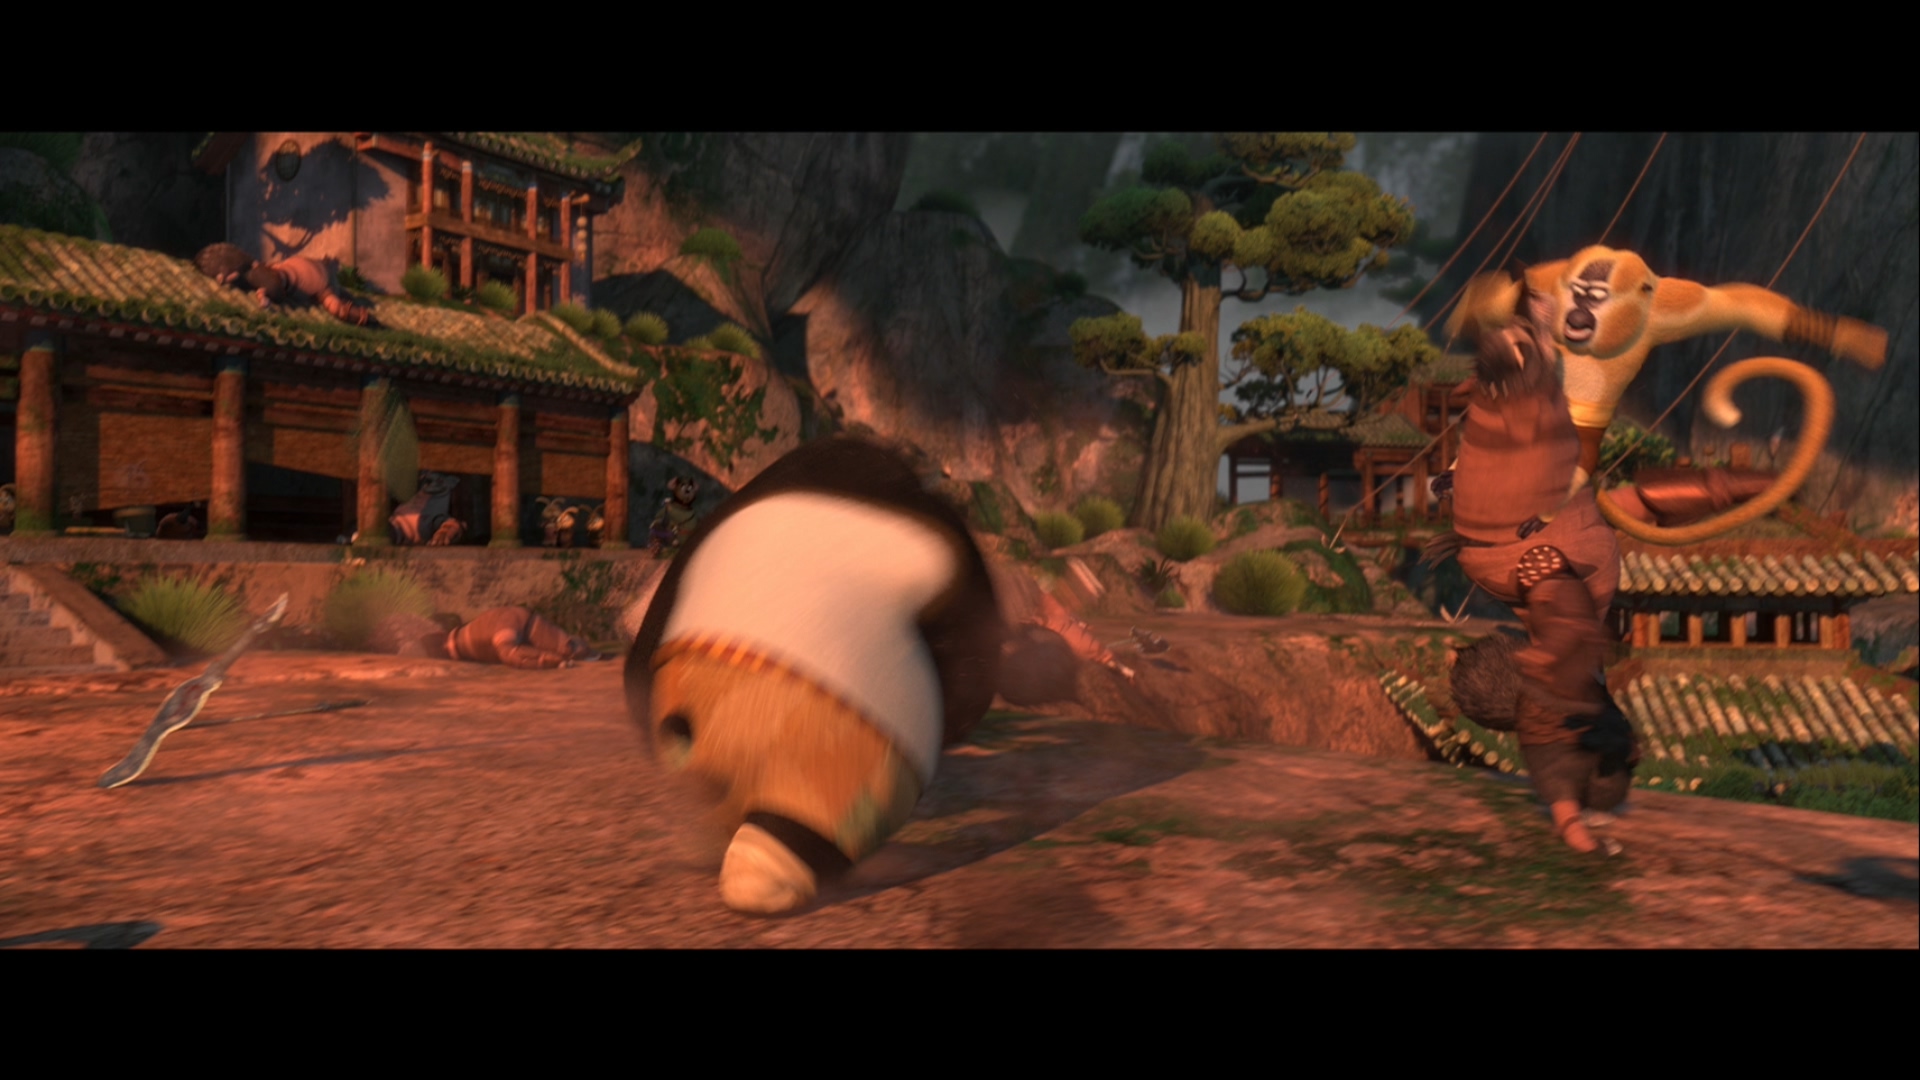 [功夫熊猫2].Kung.Fu.Panda.2.2011.3D.BluRay.1080p.AVC.TrueHD.7.1-LKS   35.53G$  q/ D/ W- f7 C. W0 ~6 s-6.jpg